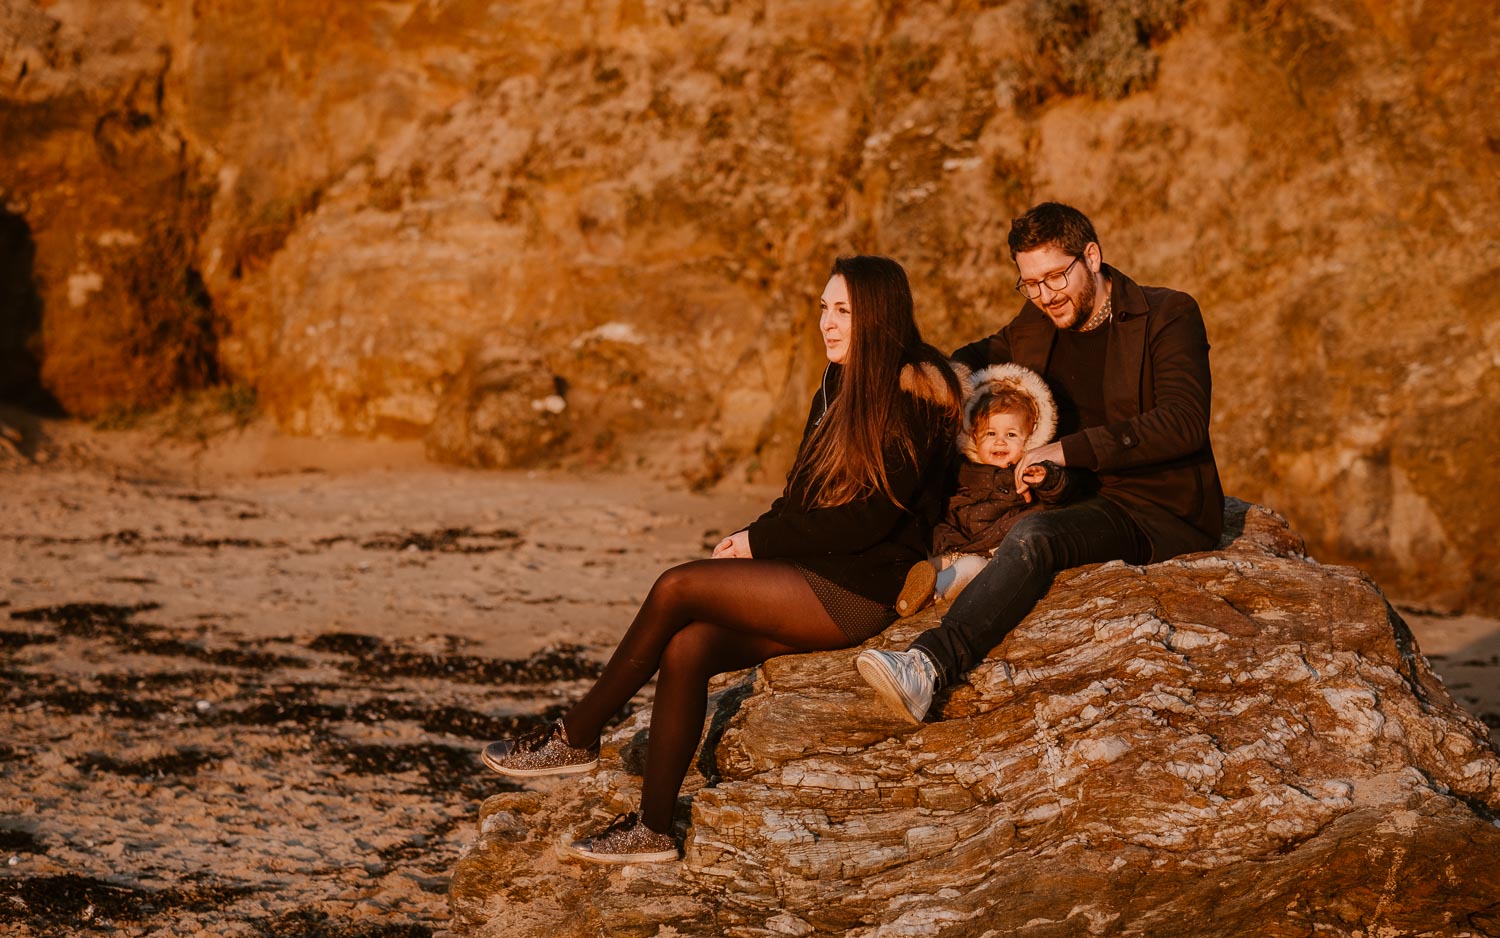 Séance photo lifestyle de famille parents enfant en extérieur, sur la plage, côte atlantique du pays de Retz par Geoffrey Arnoldy photographe